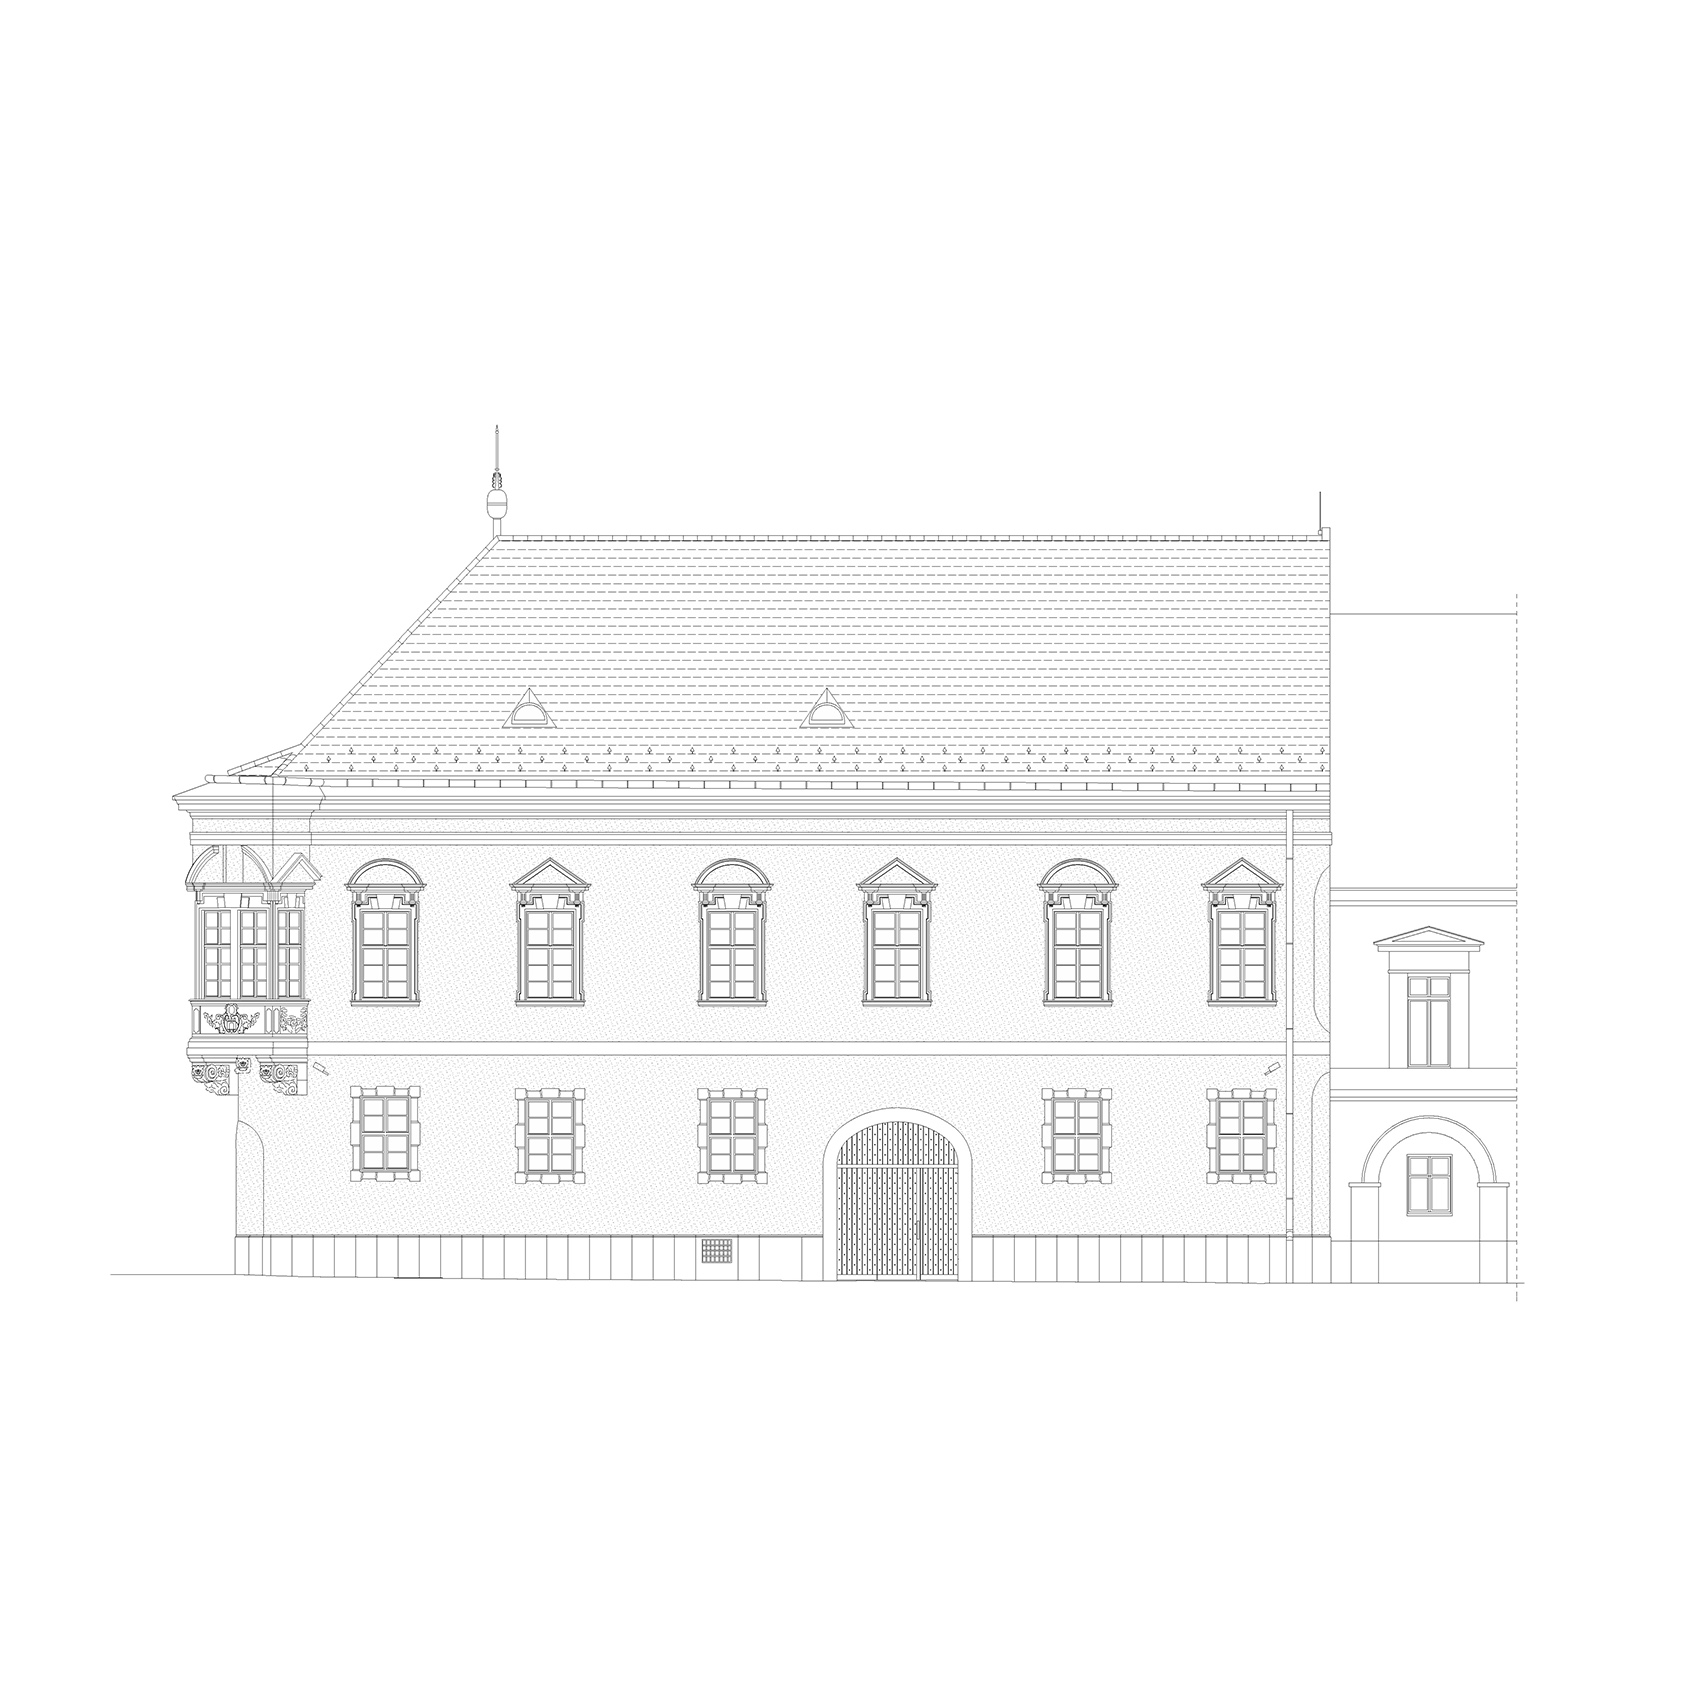 布达旧市政厅改造、翻新和扩建，匈牙利/让历史的伤痕成为建筑中不可或缺且清晰可读的一部分-103